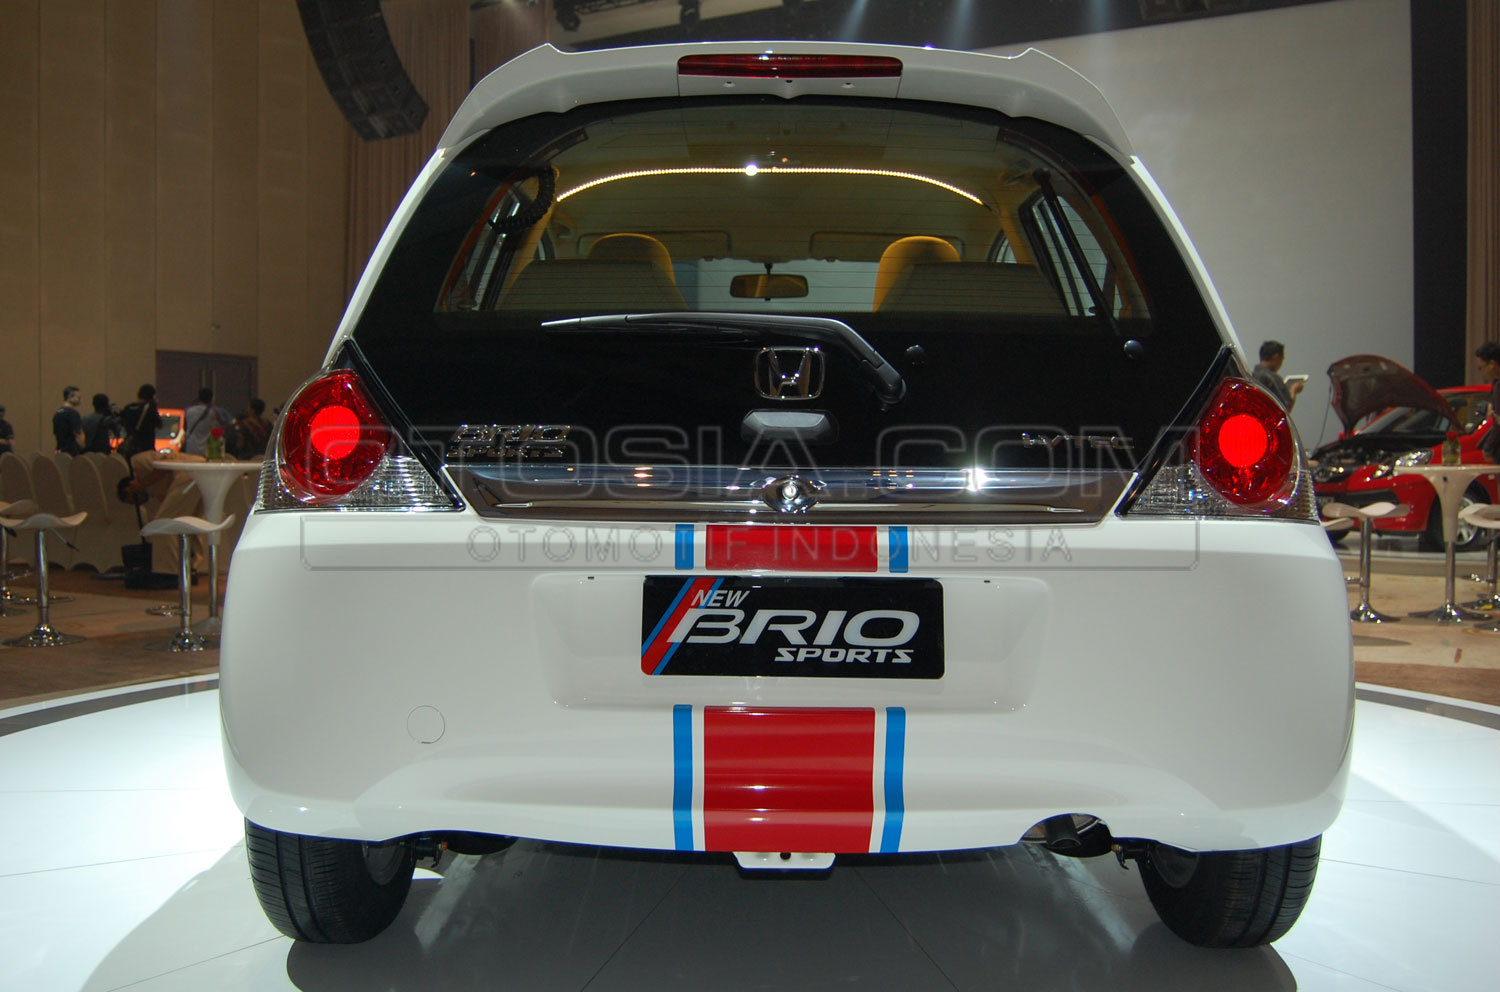 Tambah fitur baru, Honda Brio Sports makin komplit 